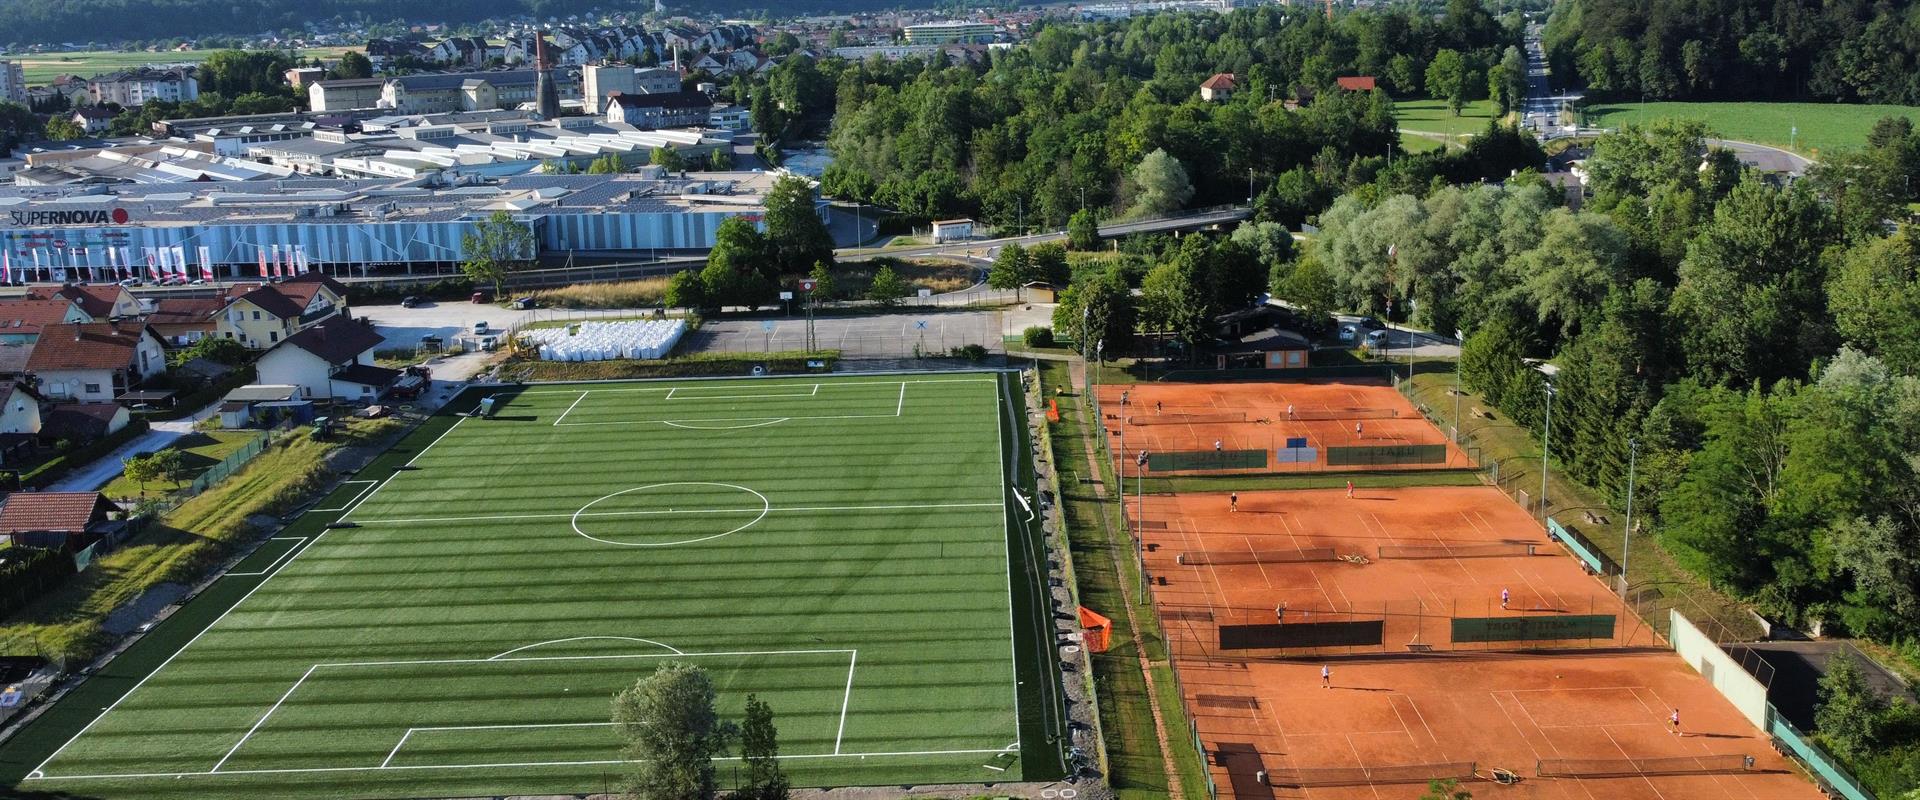 Zgradili smo nogometno igrišče z umetno travo - Športni park Virtus